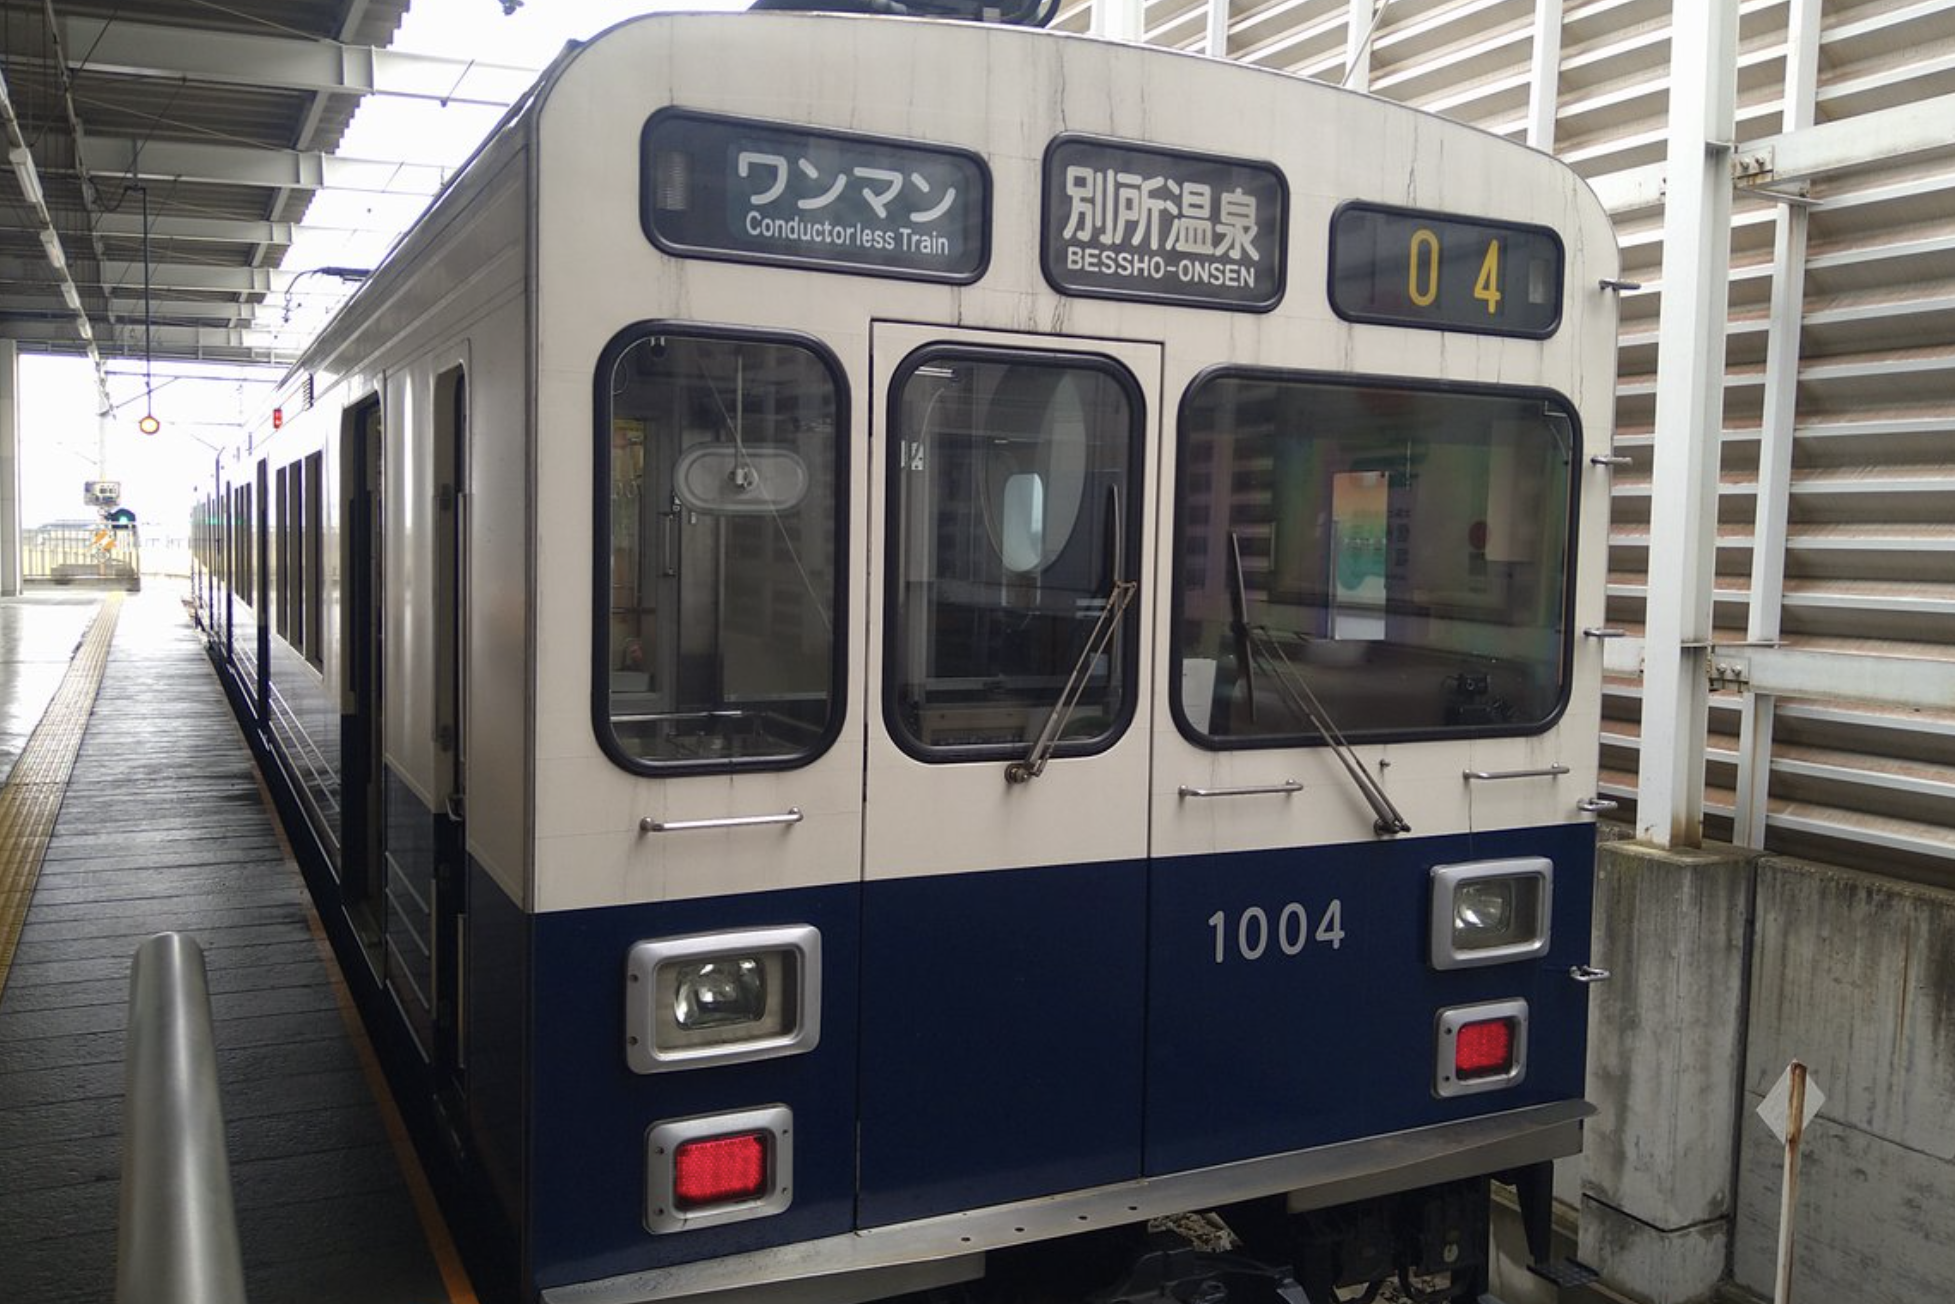 健二と夏希がJR上田駅に到着した後、伊勢山に向かう際に登場した電車